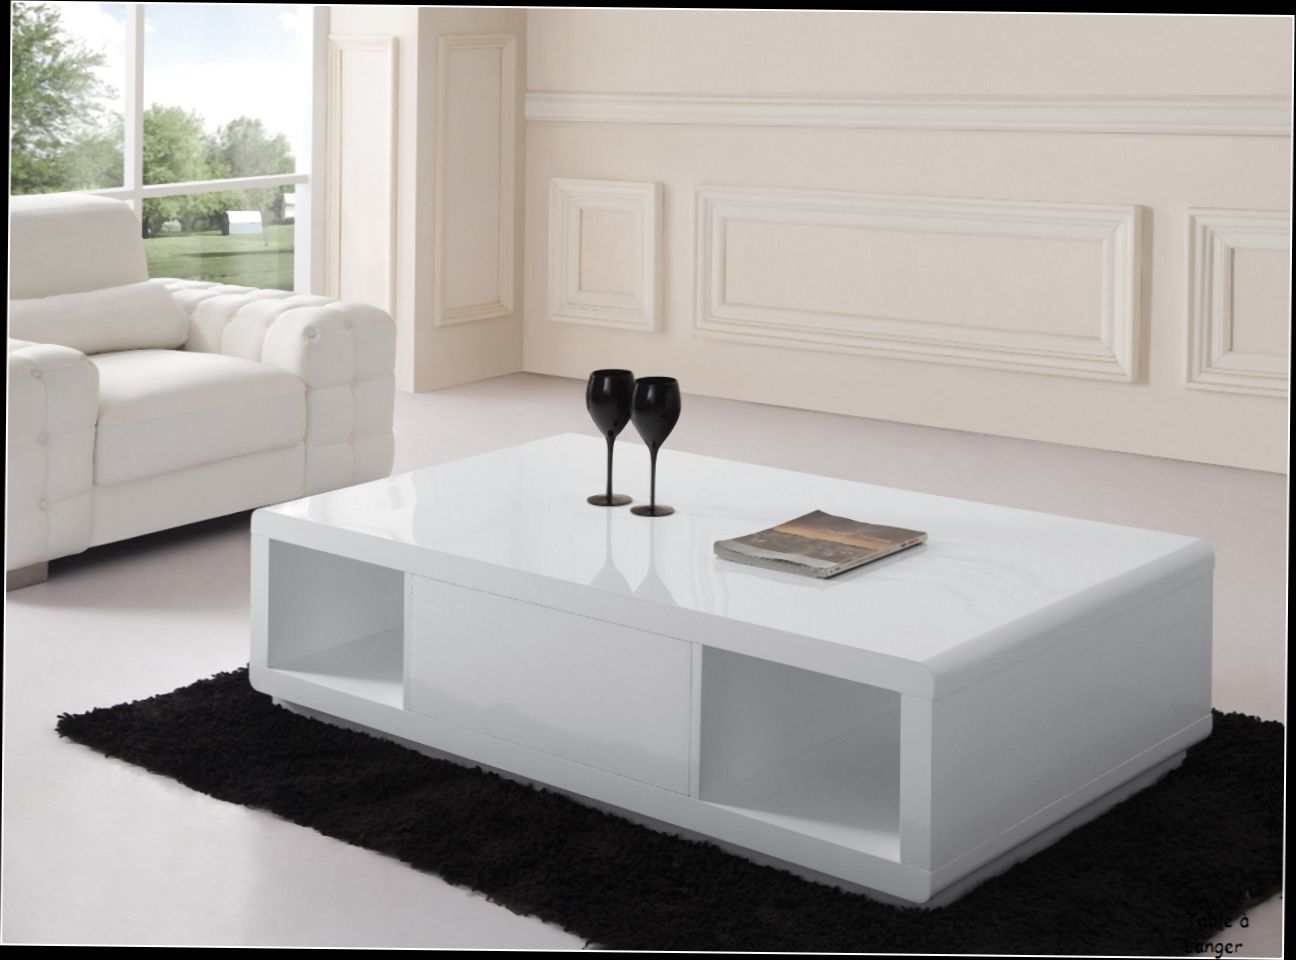 Table basse en bois blanc avec rangement